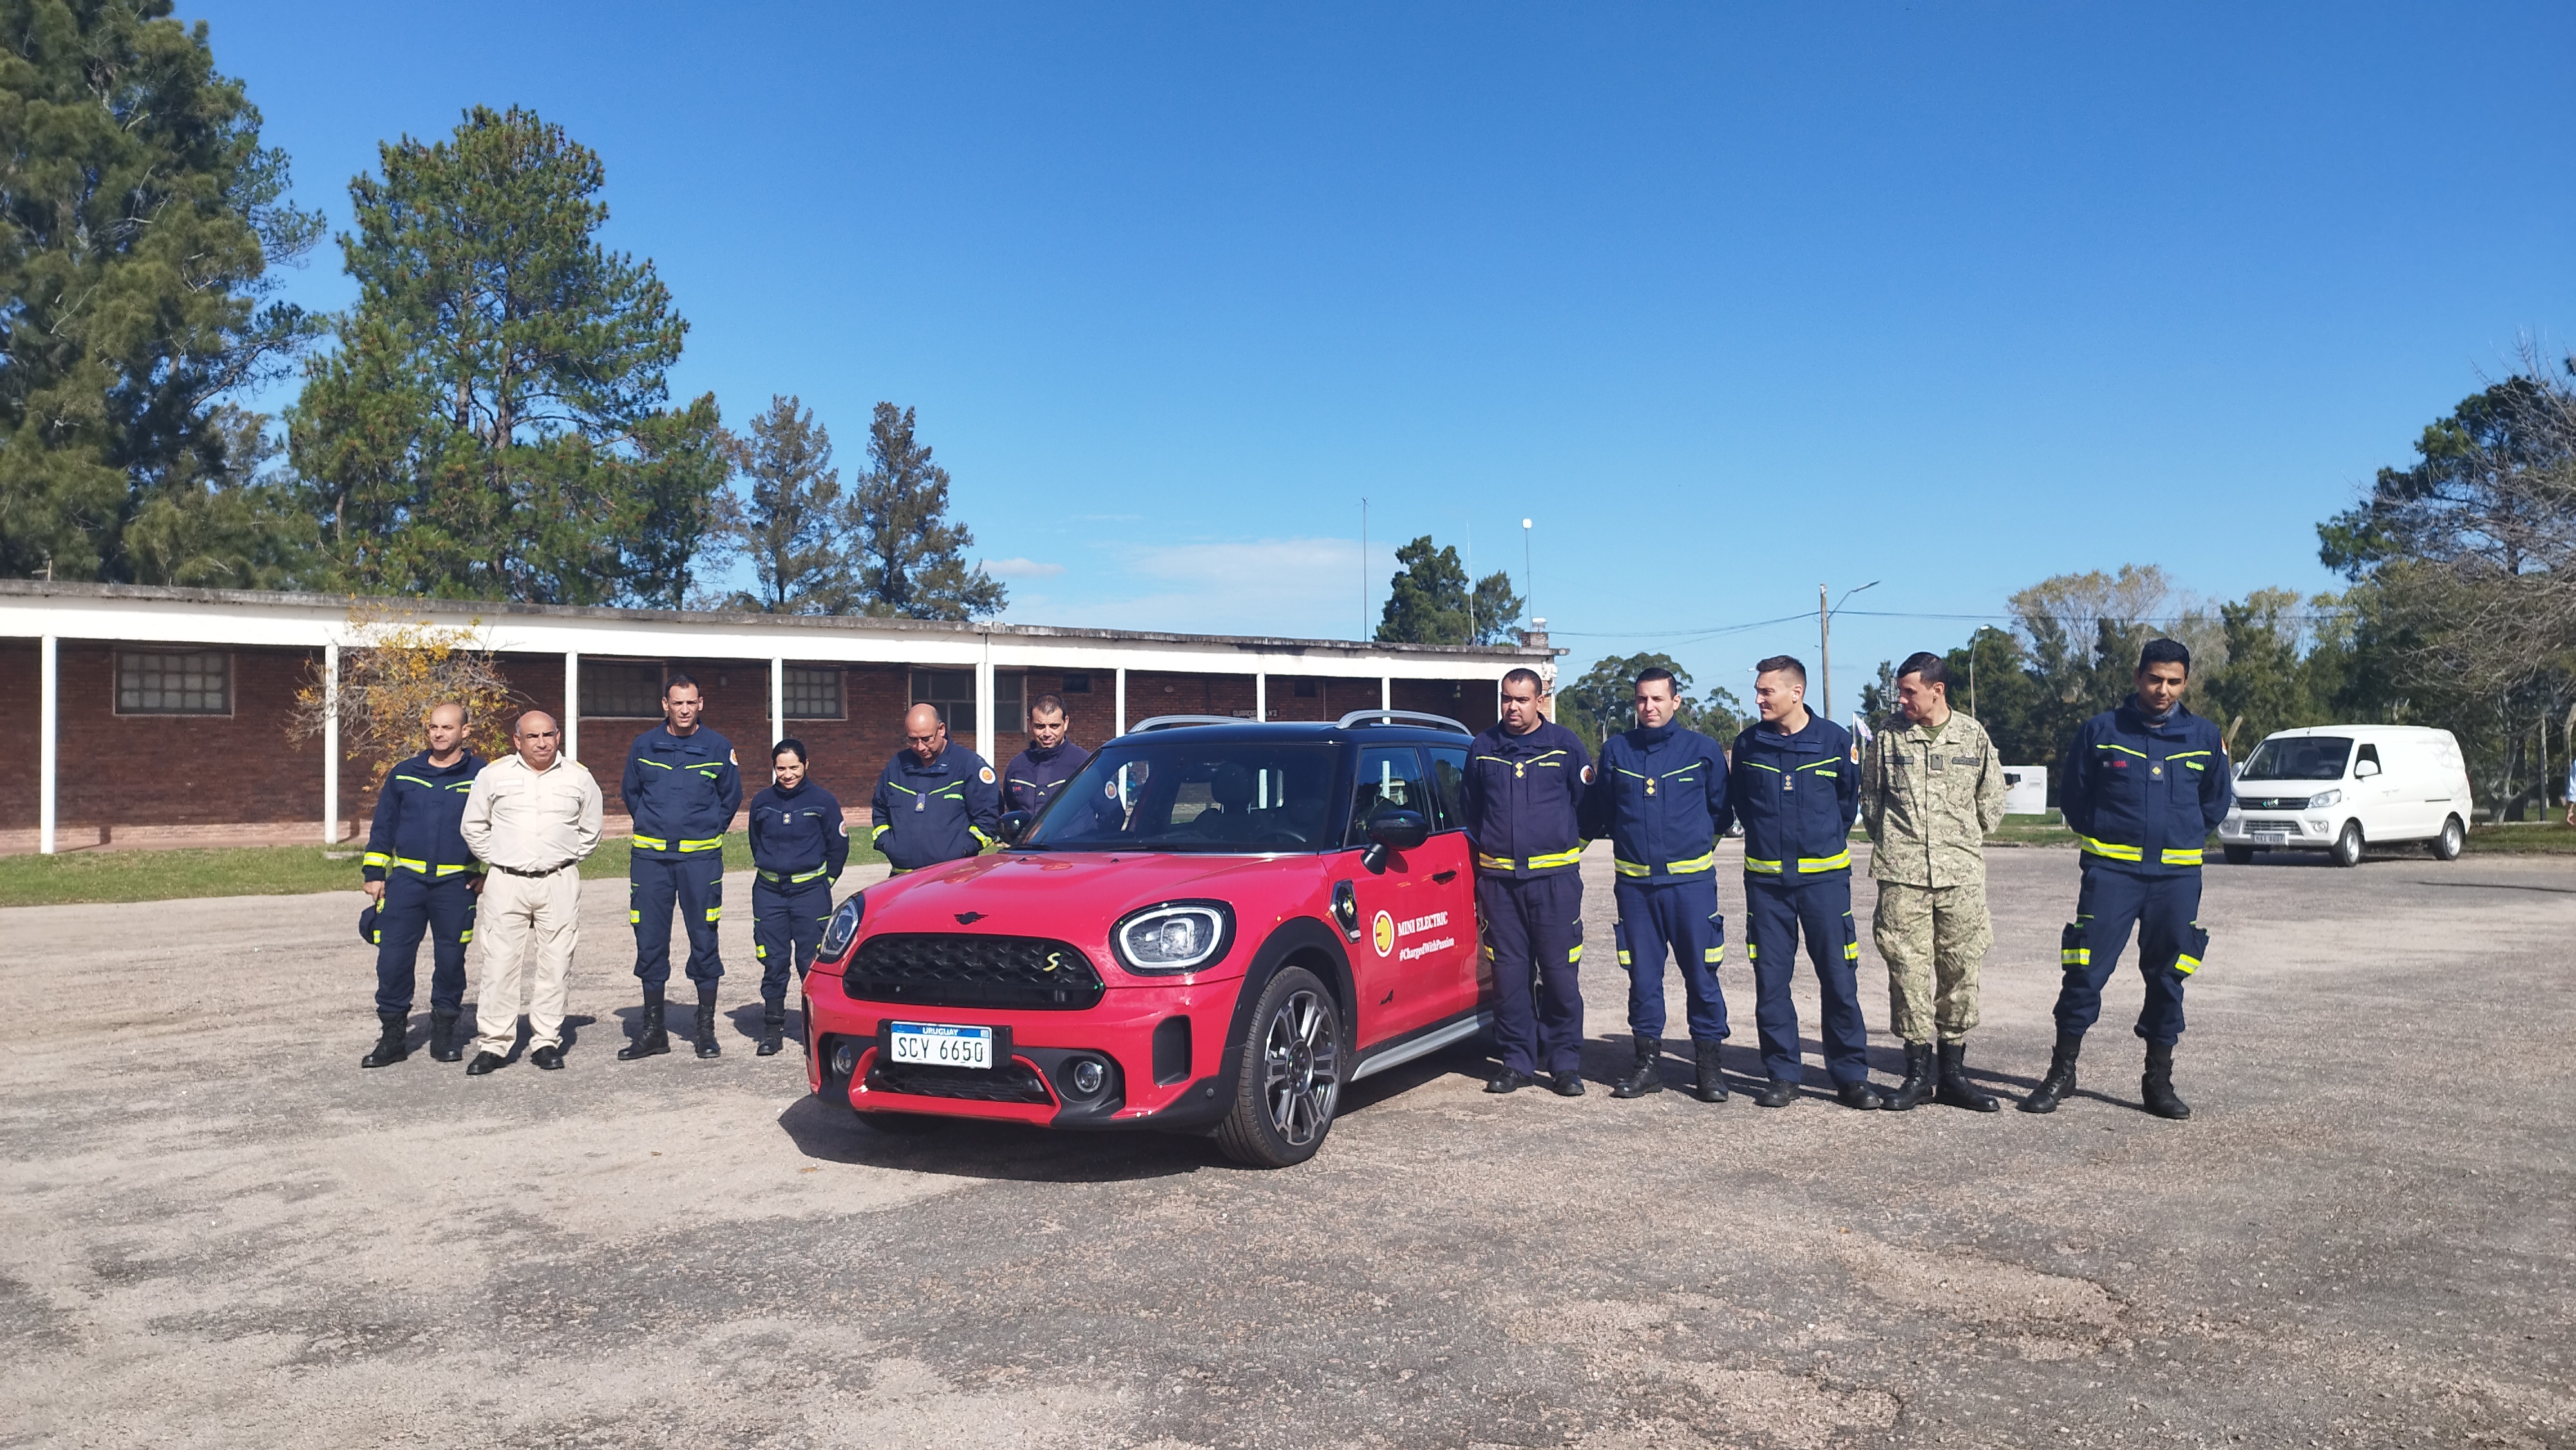 IMG_20230511_133639-I8uHVZU0.jpg - El pasado jueves 11 de mayo culminó la &#034;Capacitación para bomberos sobre manejo de incidentes relacionados con la movilidad eléctrica&#034; en donde se capacitaron a 25 bomberos en la Base Aérea de Santa Bernardina del departamento de Durazno. Esta capacitación es la continuación del primer curso regional que organizó la plataforma MOVE del Programa de la Naciones Unidas para el Medio Ambiente a finales de 2022 en Paraguay, donde participaron y se formaron dos bomberos instructores de Uruguay.